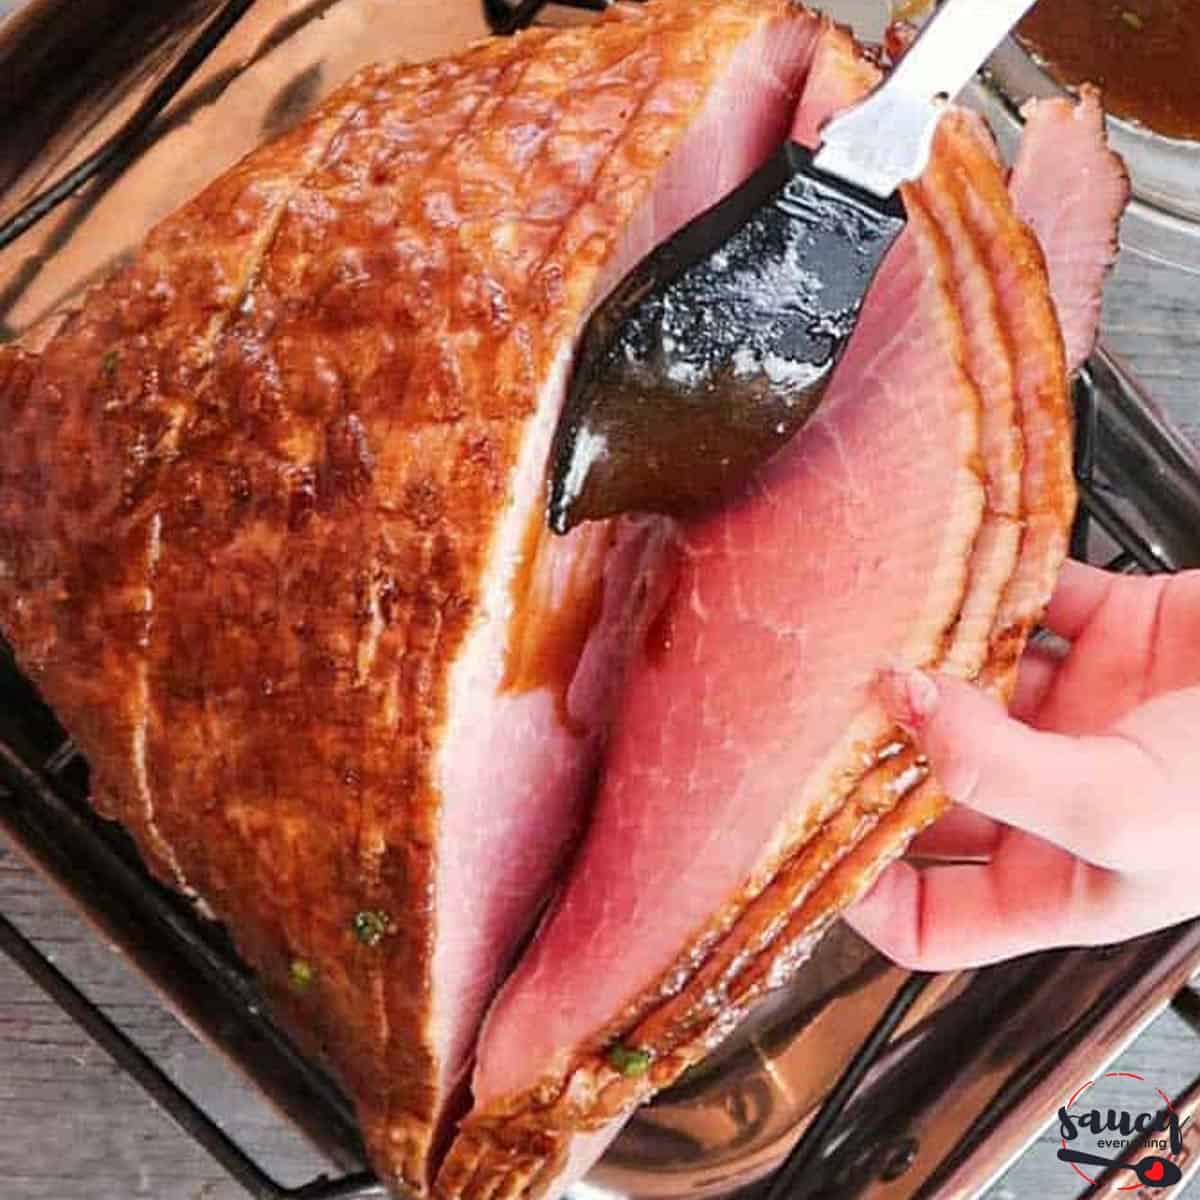 Spreading glaze between each slice of ham